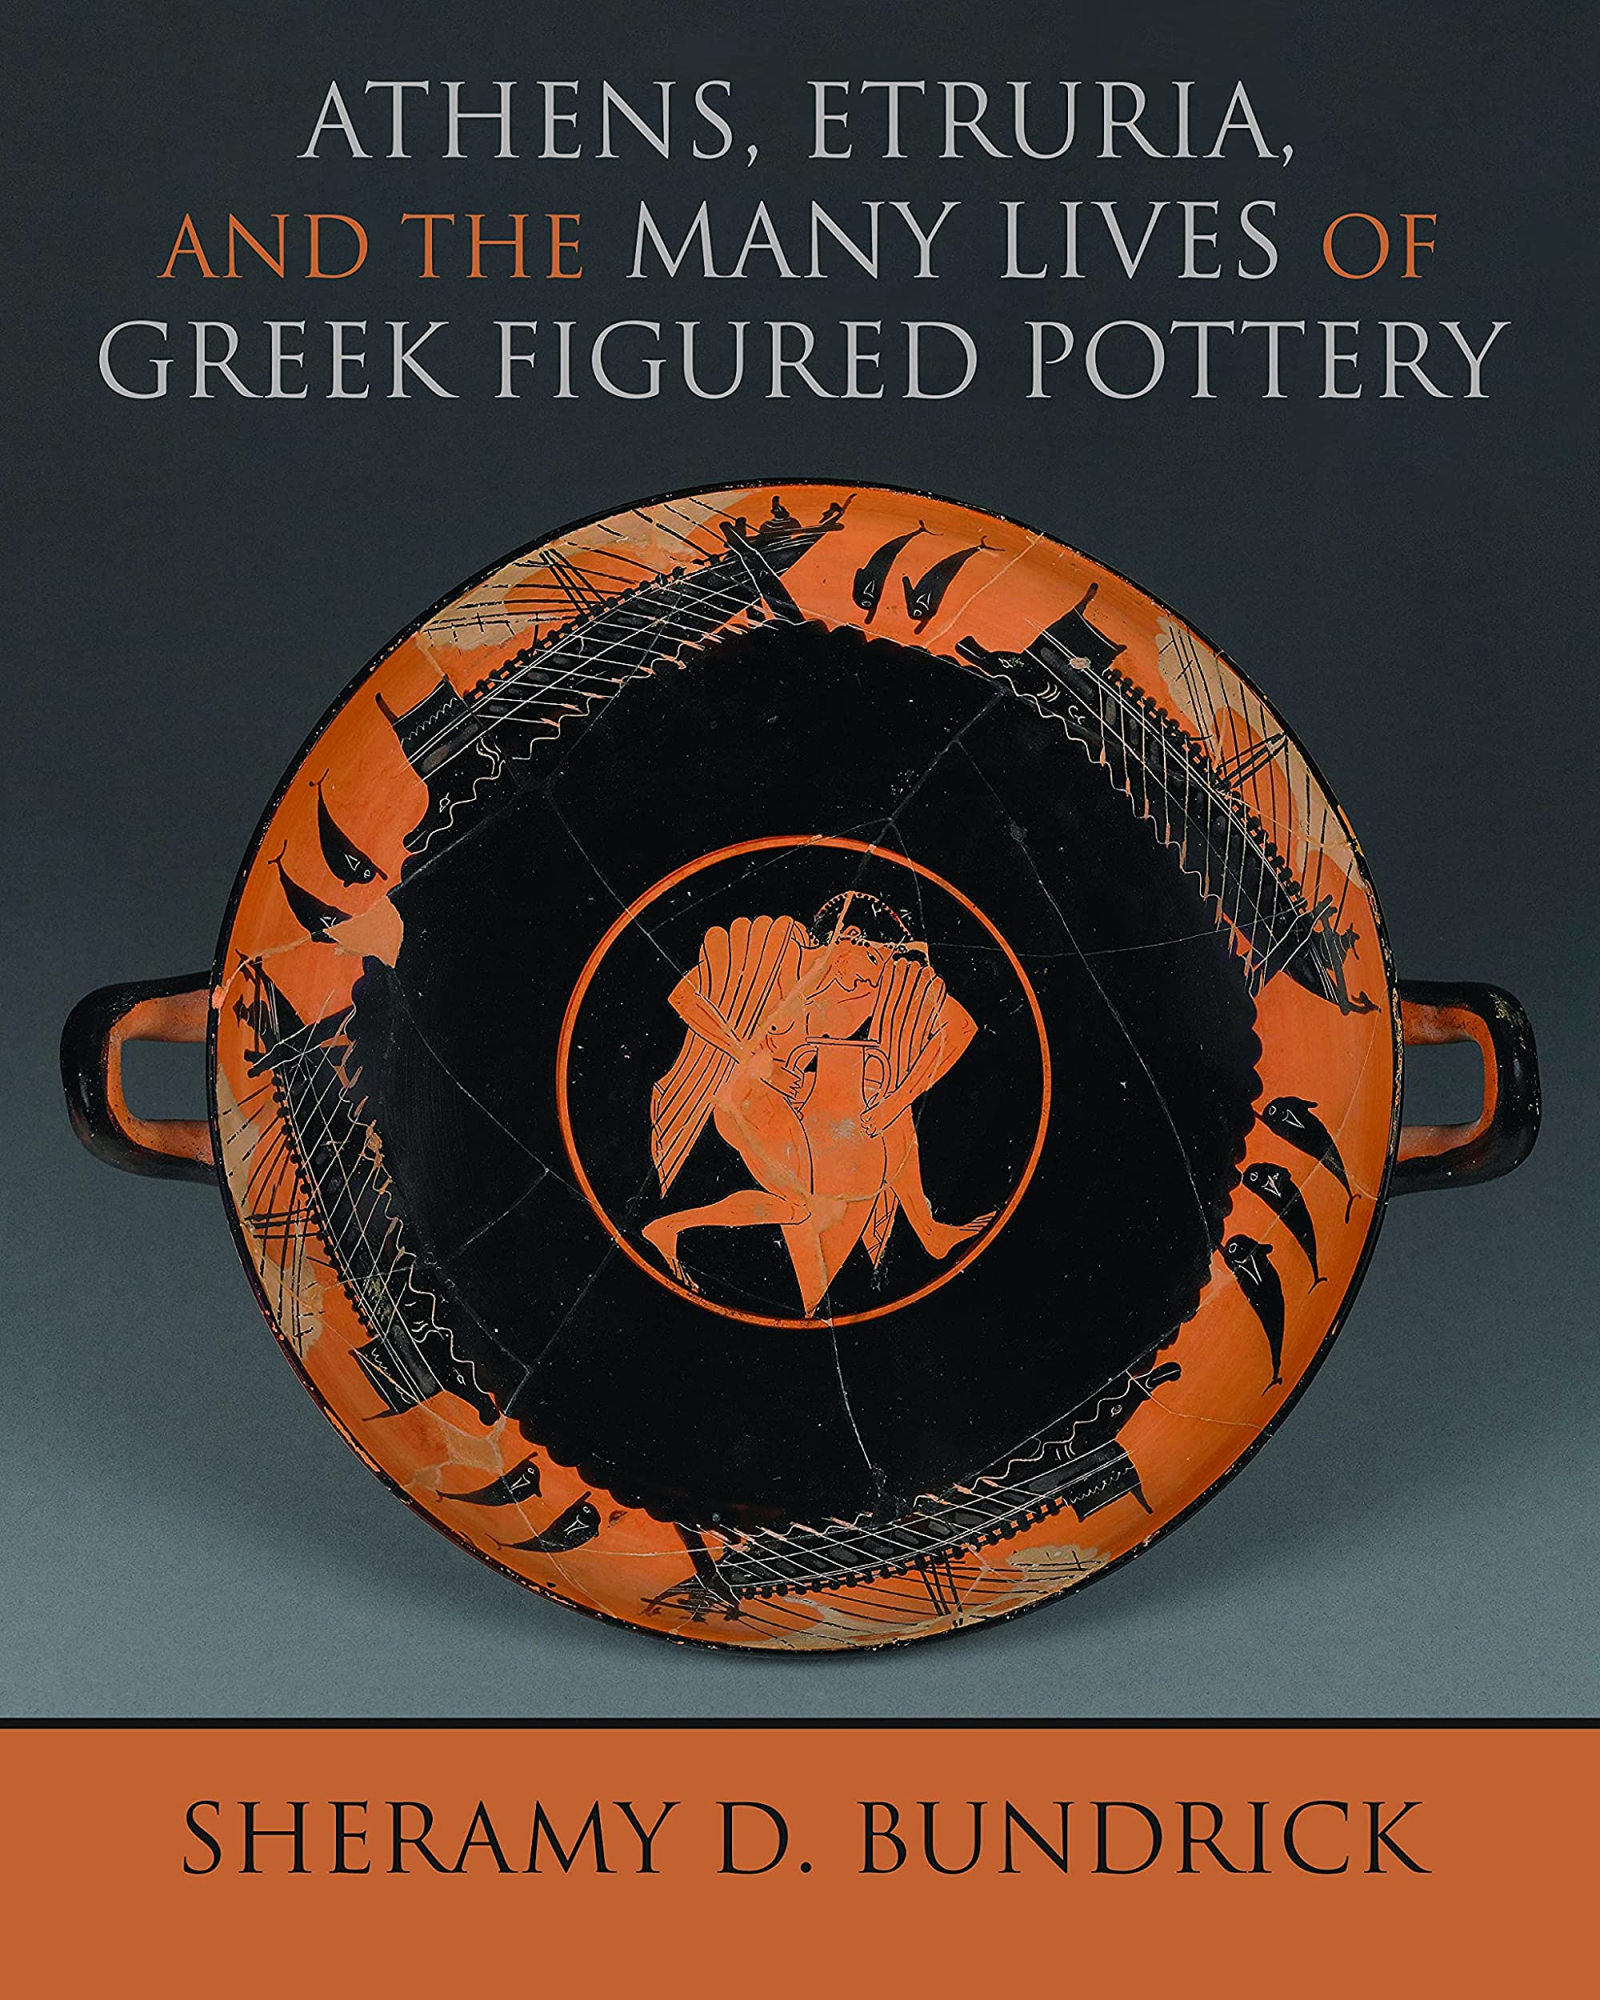 LIbri UK/US Sheramy D. Bundrick - Athens, Etruria, And The Many Lives Of Greek Figured Pottery NUOVO SIGILLATO, EDIZIONE DEL 28/04/2022 SUBITO DISPONIBILE